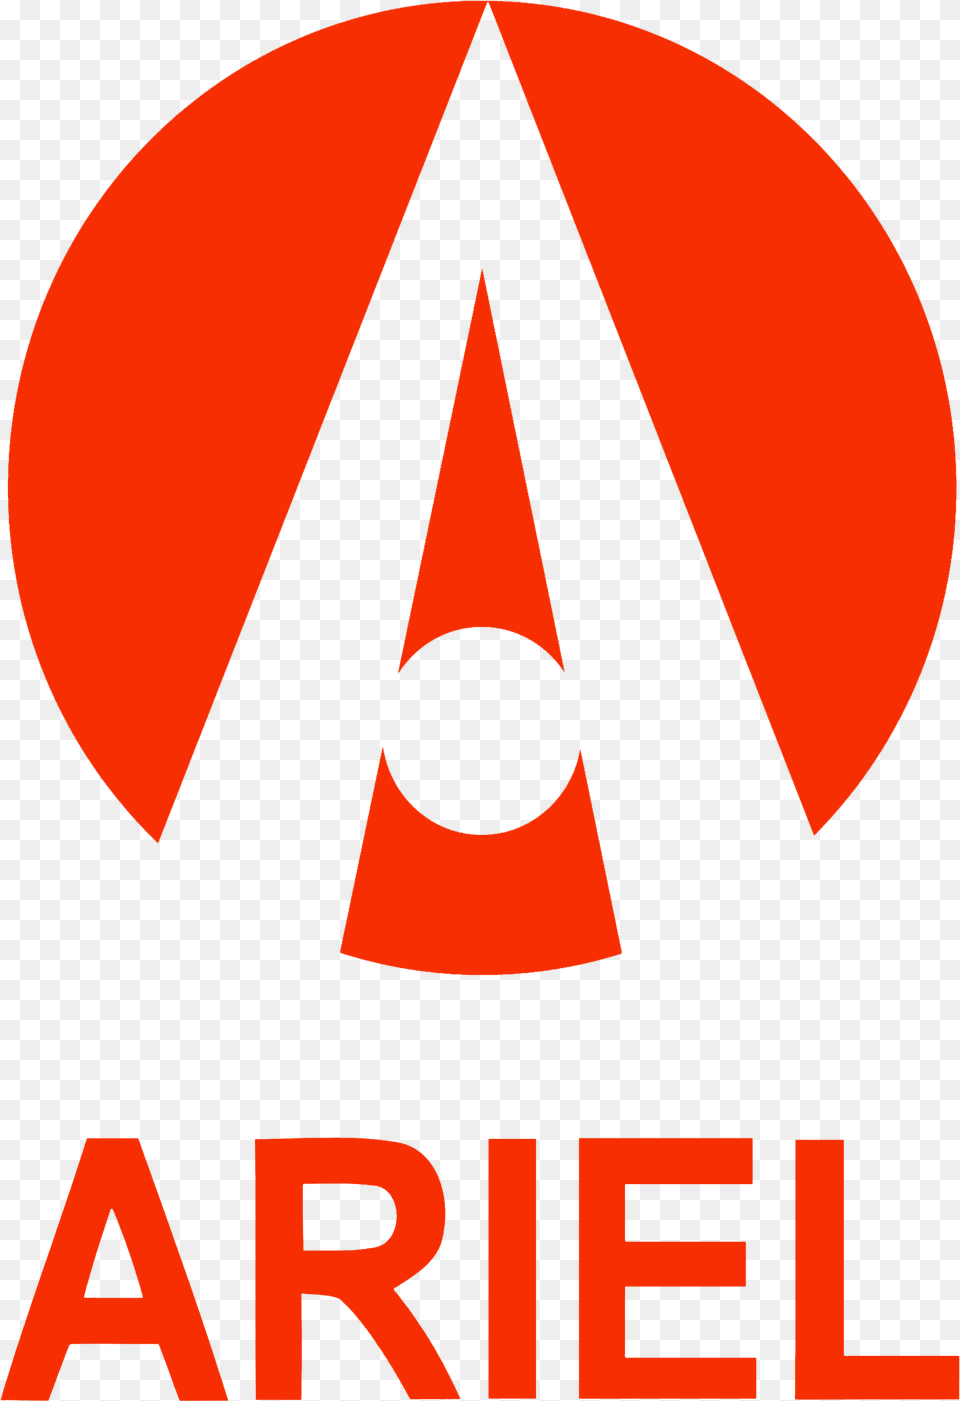 Ariel Logo Hd Information Ariel Atom Png Image